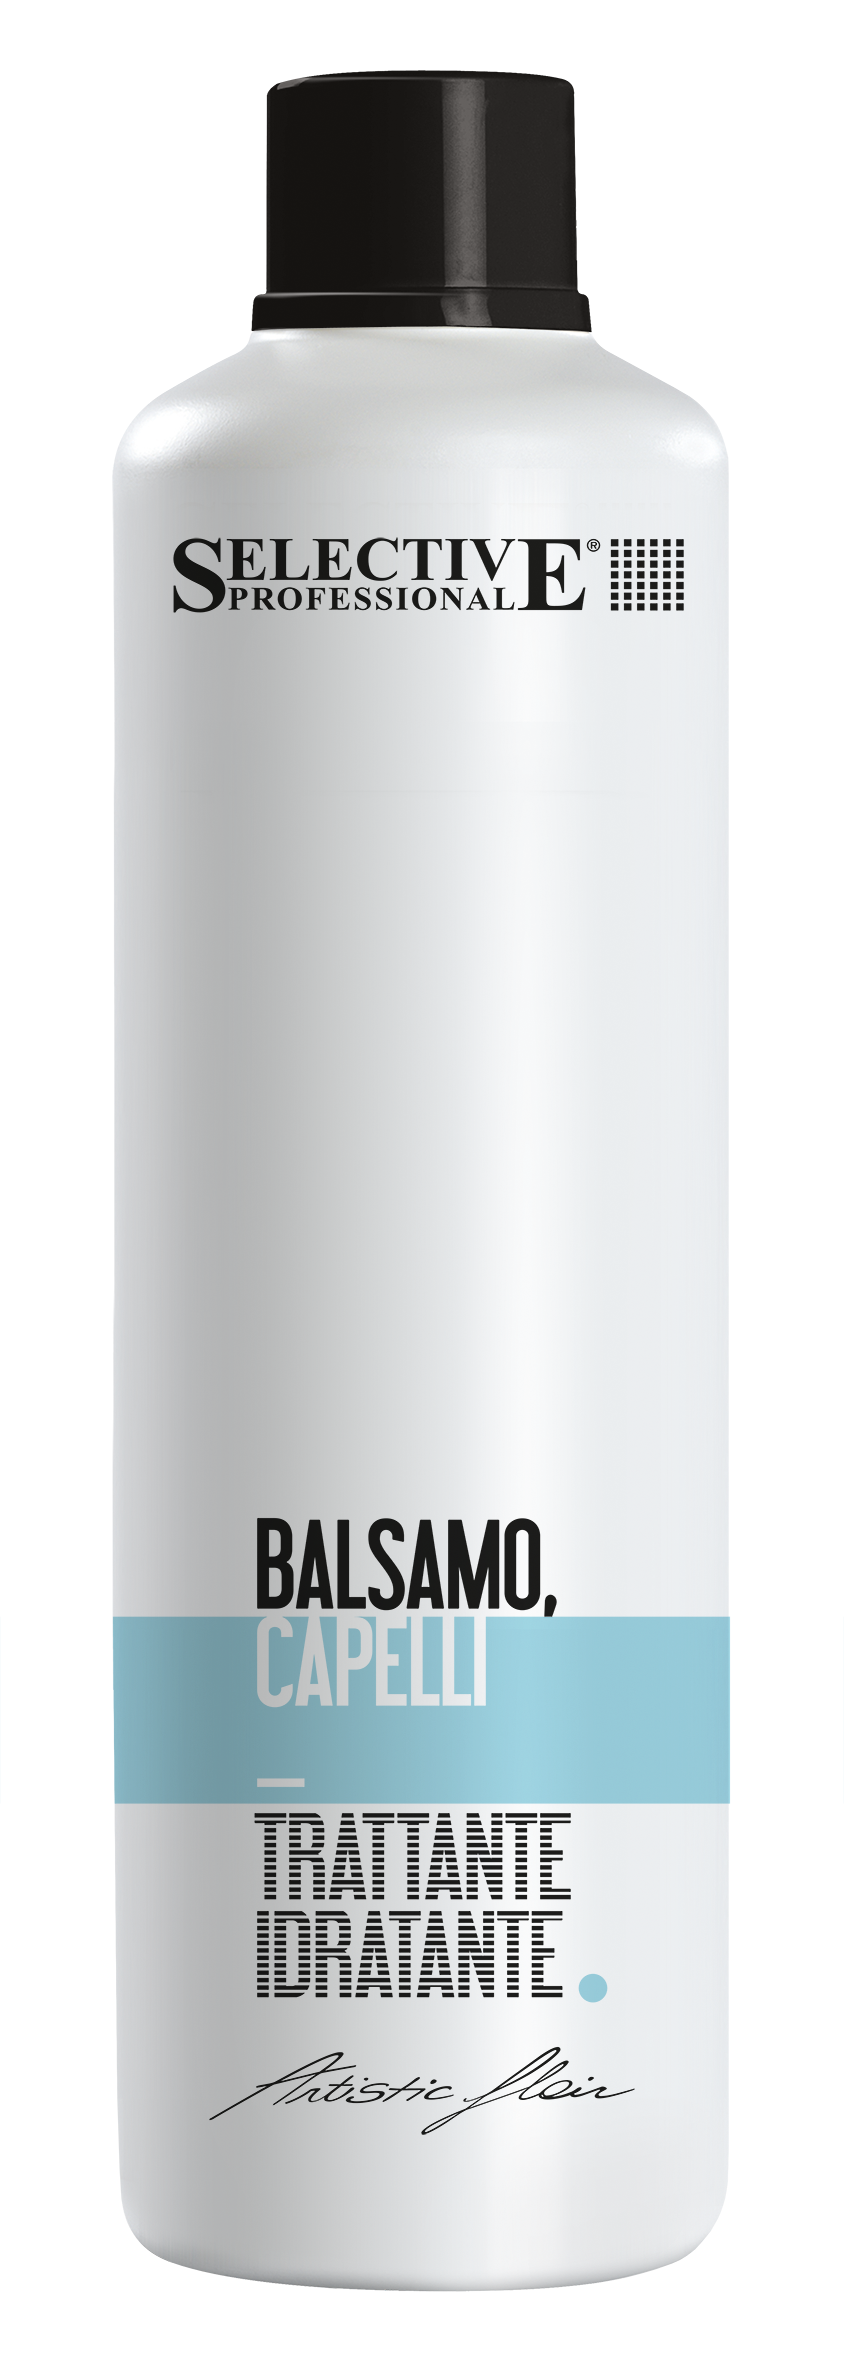 Бальзамы для волос:  SELECTIVE PROFESSIONAL -  Бальзам Увлажняющий для сухих и нормальных волос BALSAMO CAPELLI  (1000 мл)